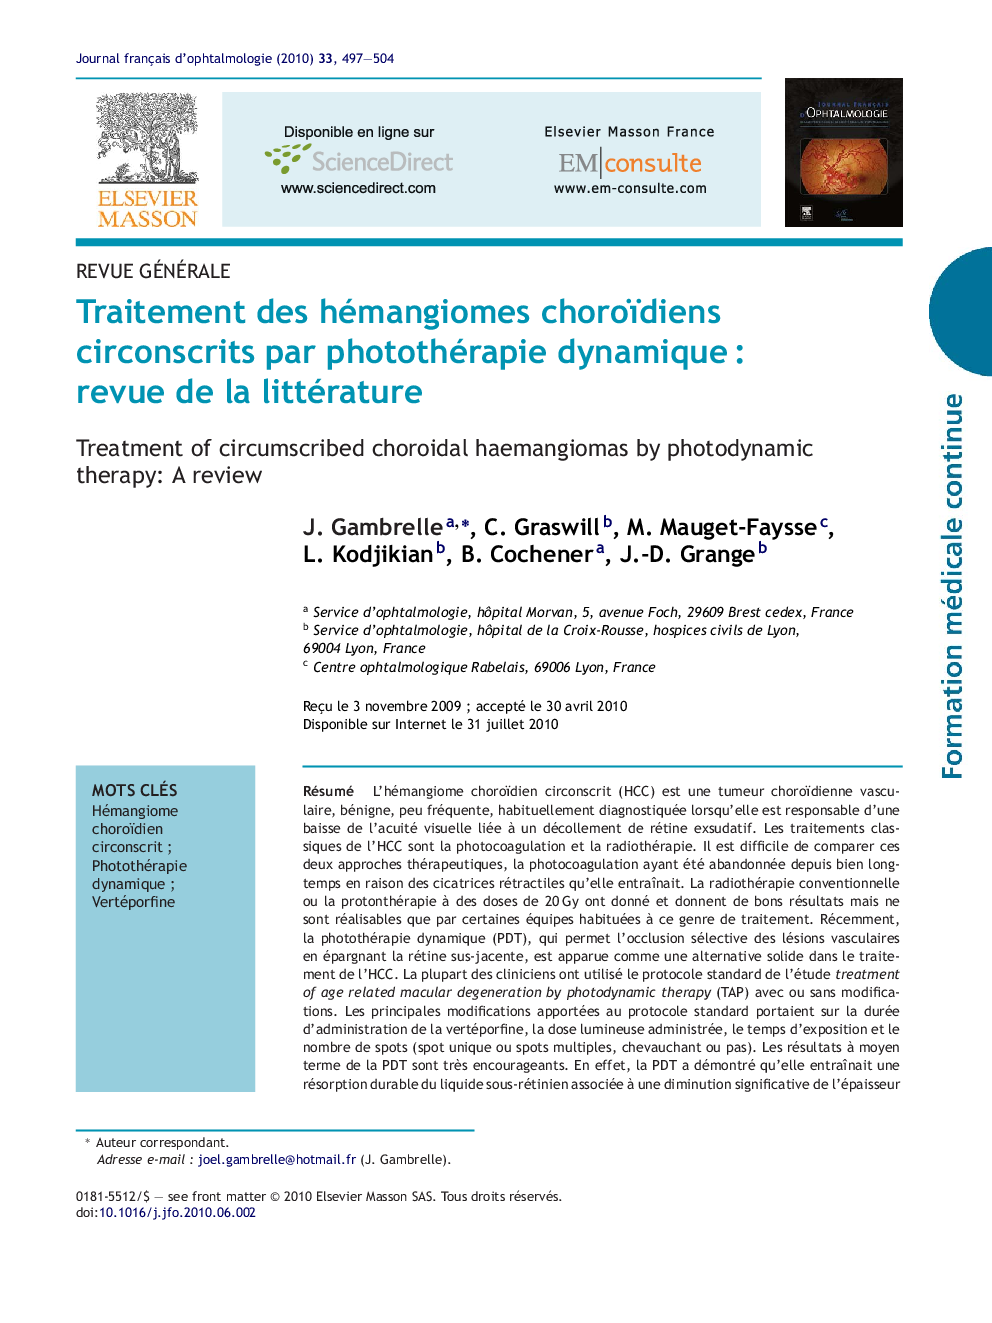 Traitement des hémangiomes choroïdiens circonscrits par photothérapie dynamiqueÂ : revue de la littérature